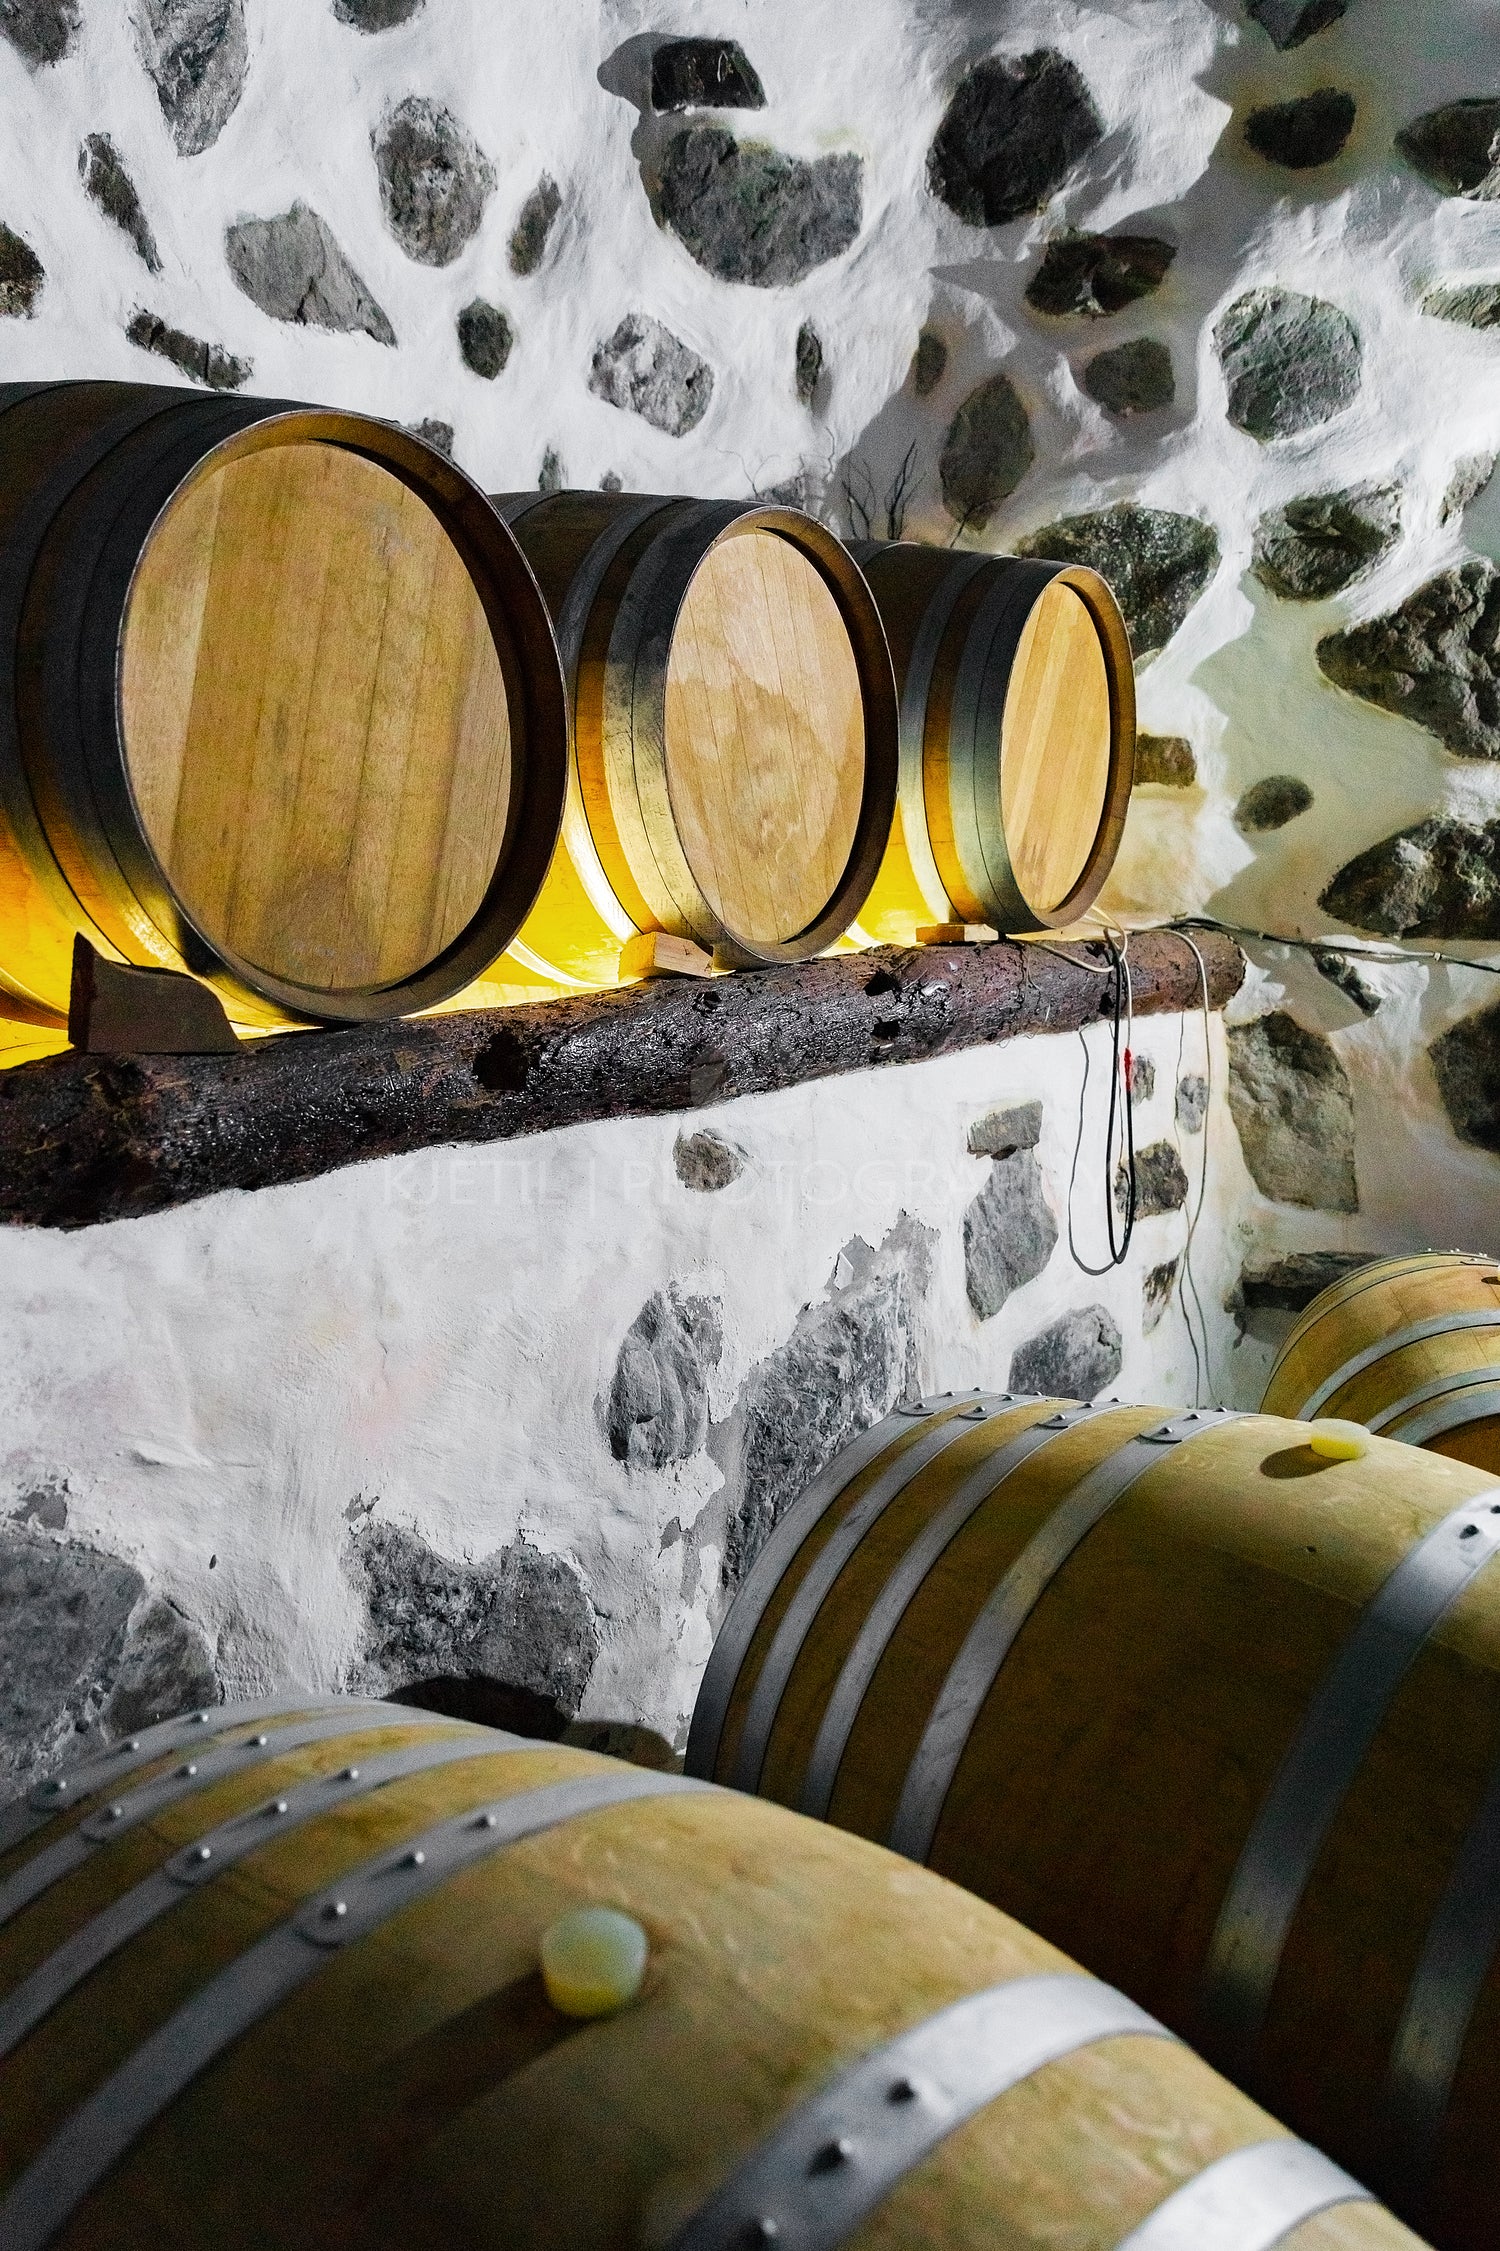 Wooden Barrels in Stored At Wine Cellar Under Ground